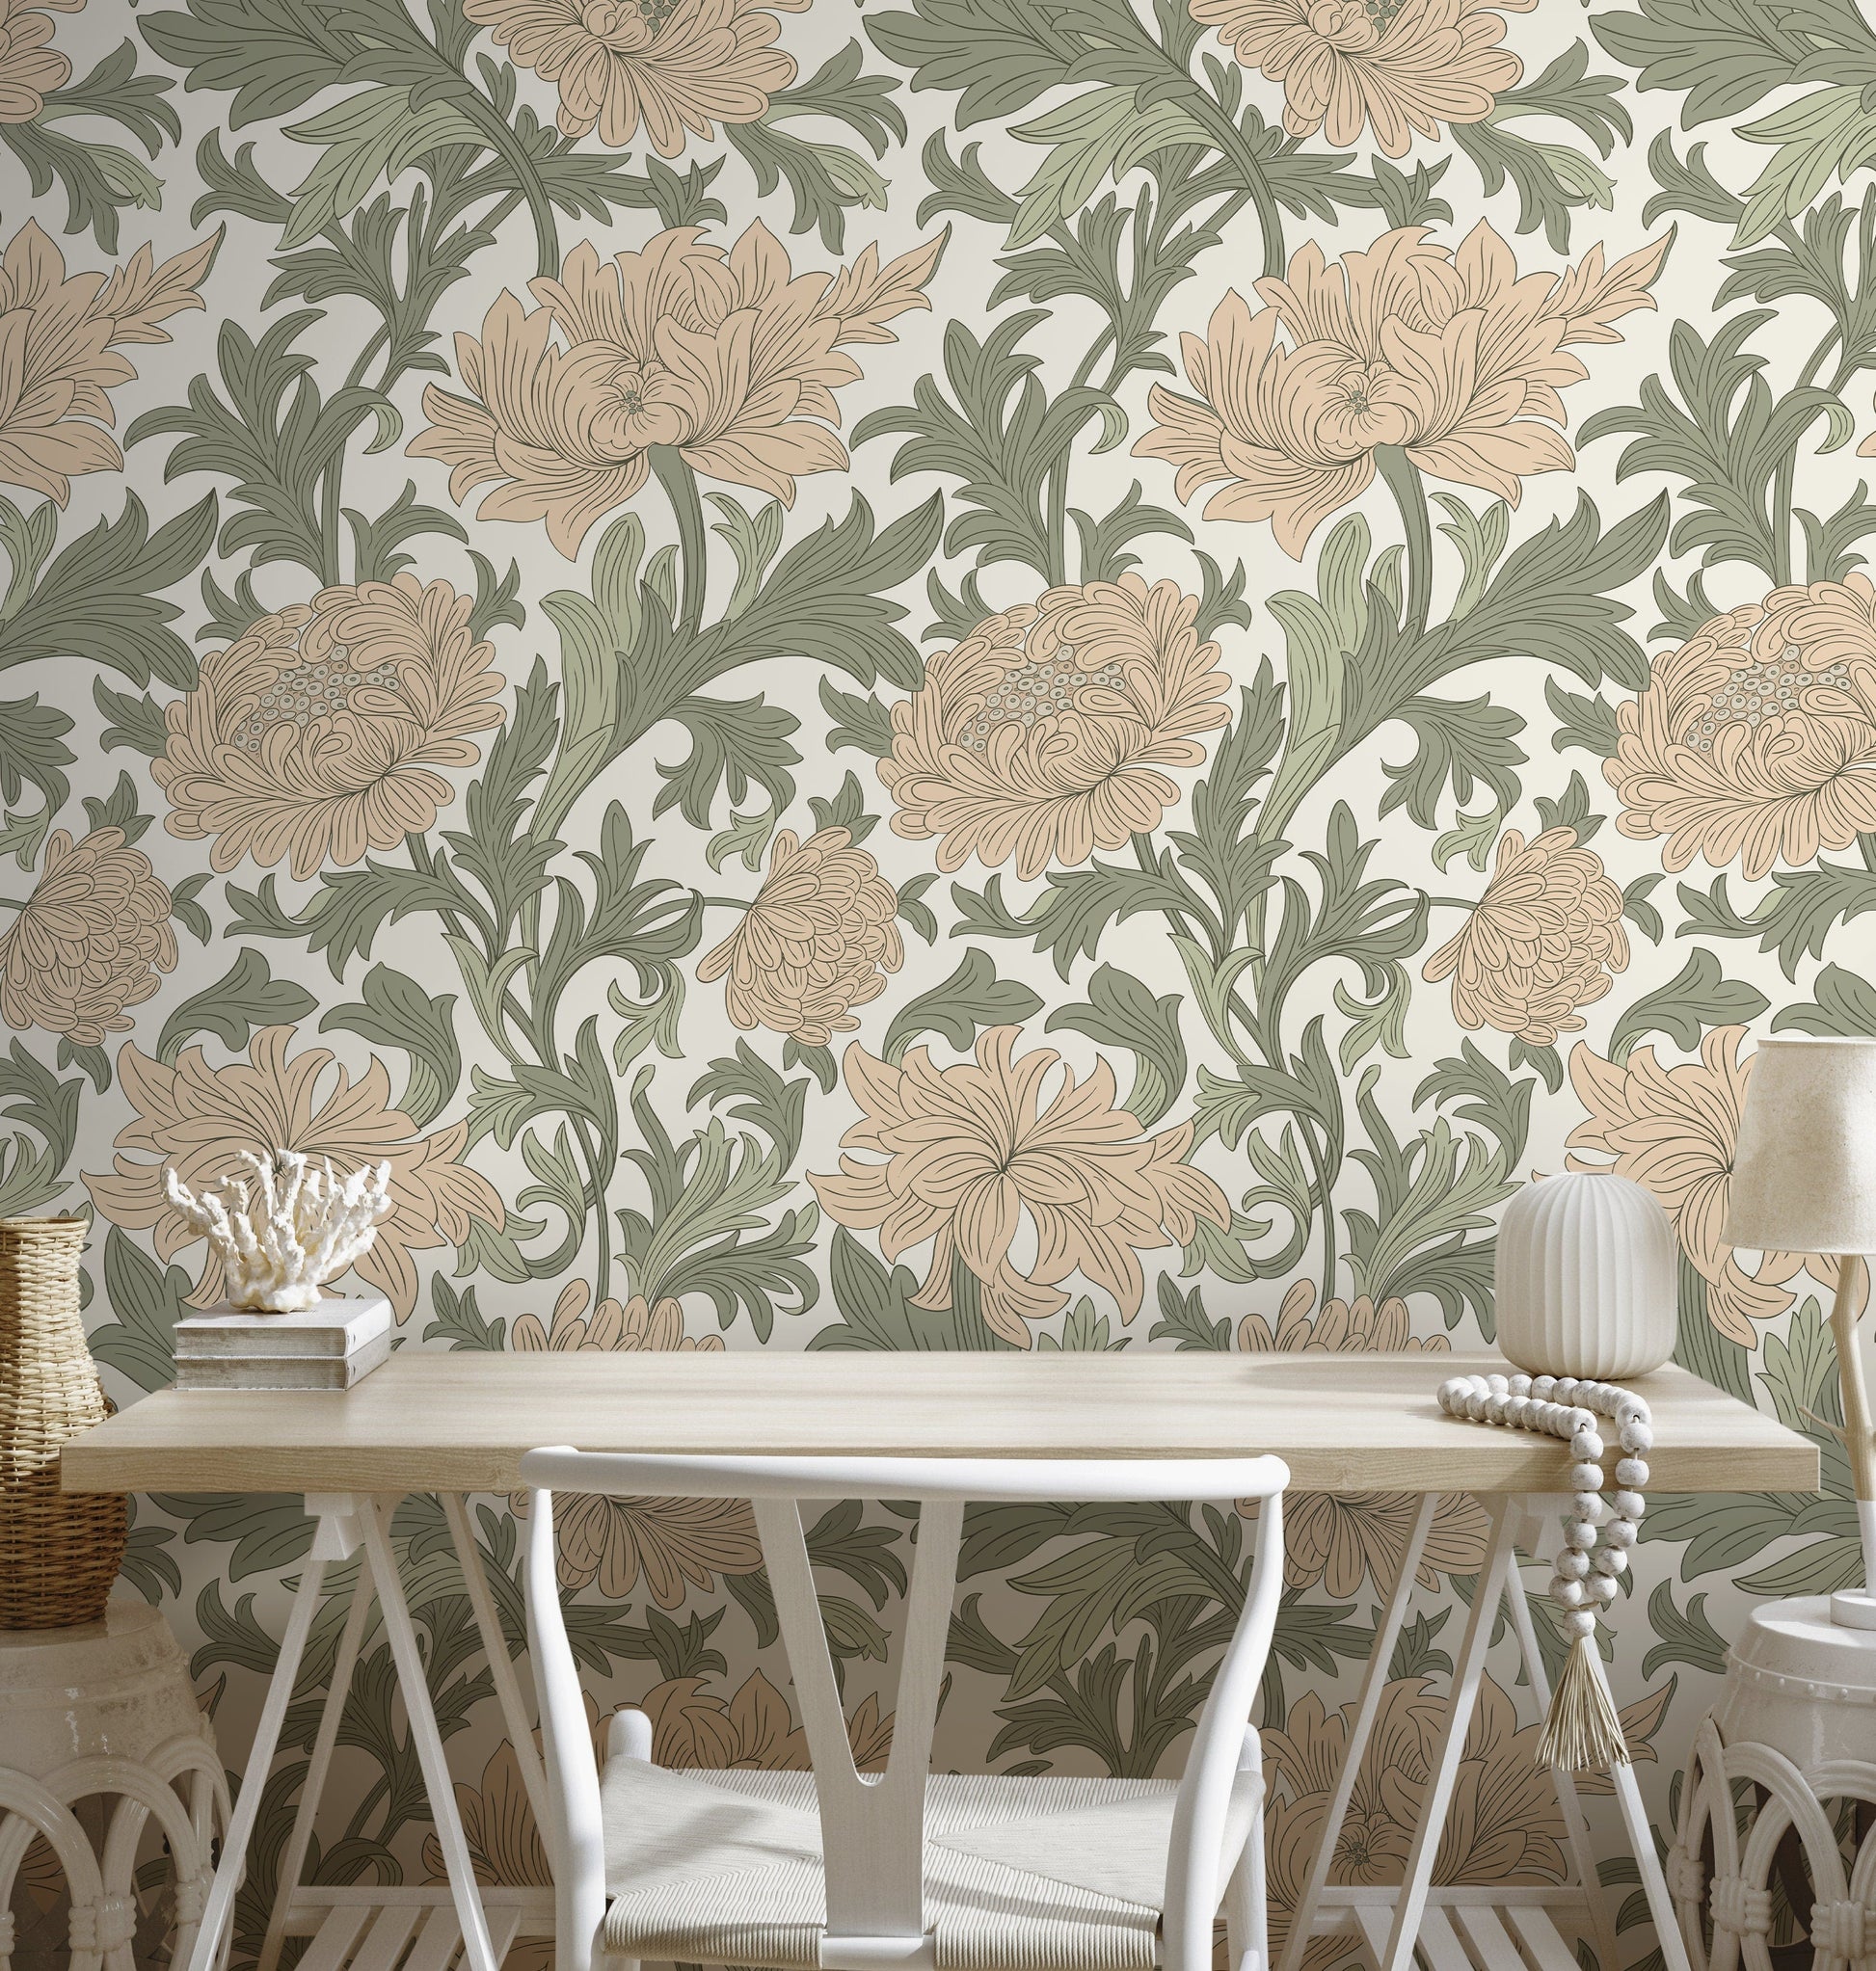 Floral Art Nouveau Wallpaper / Peel and Stick Wallpaper Removable Wallpaper Home Decor Wall Art Wall Decor Room Decor - D188